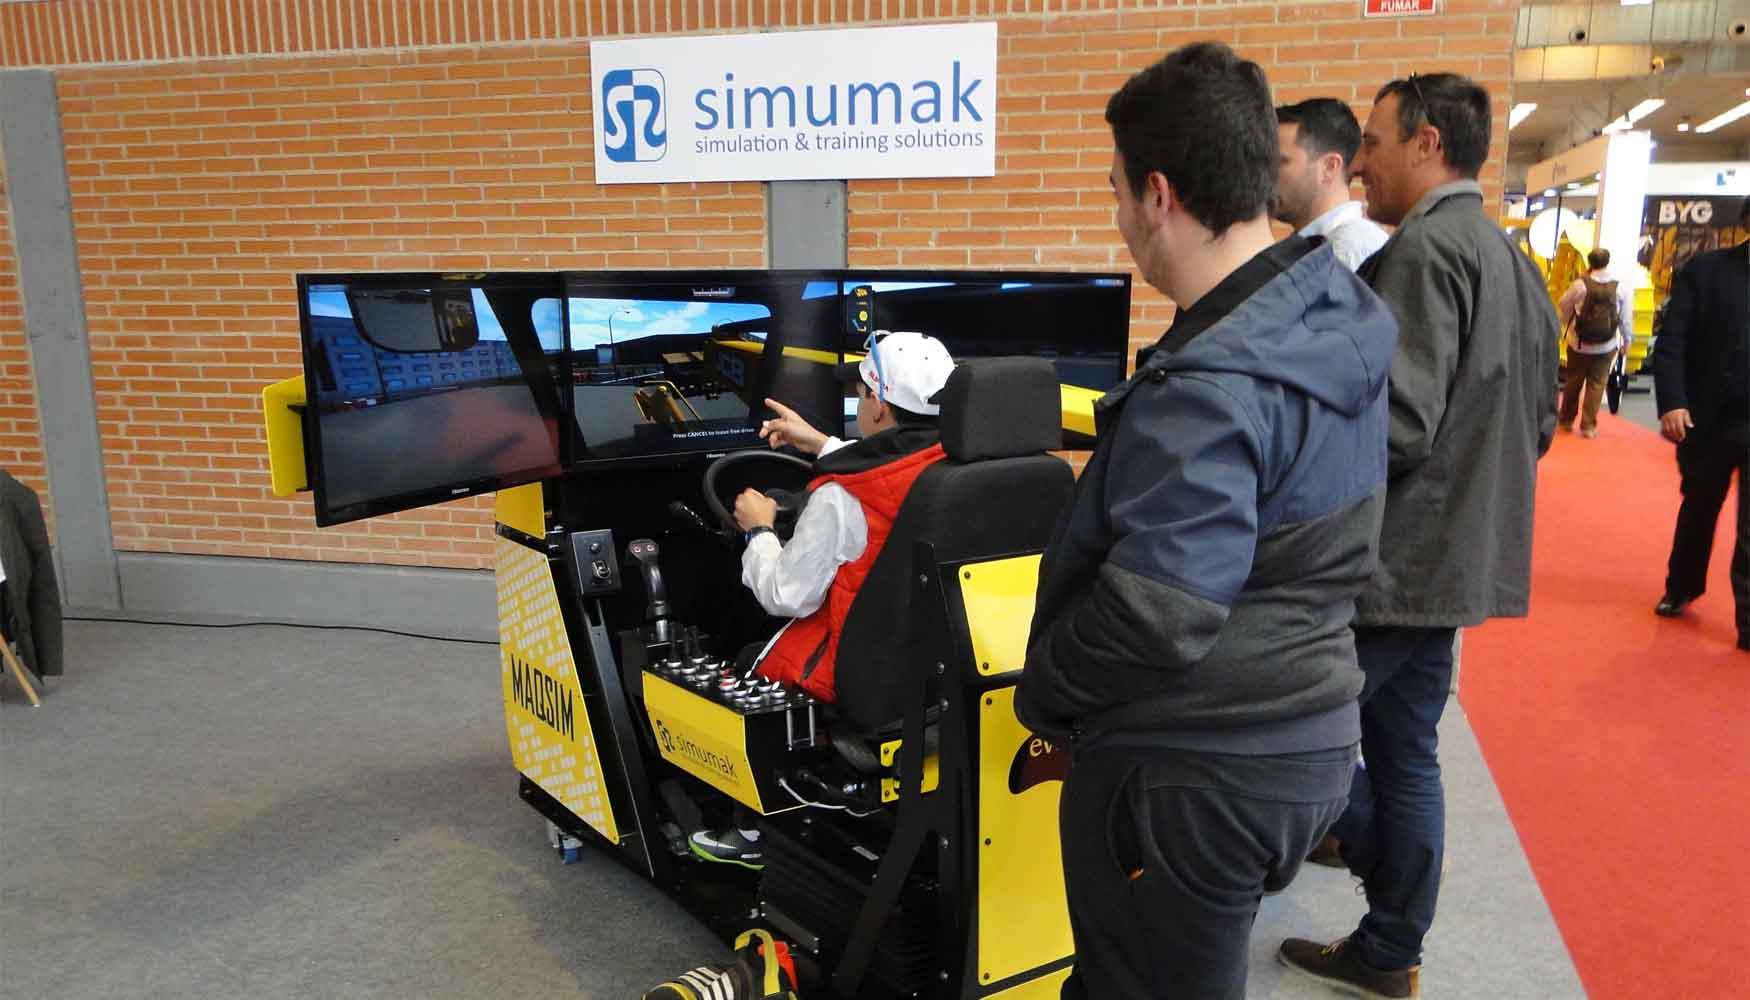 Simulador Maqsim Silver mostrado por Simumak en Smopyc 2017